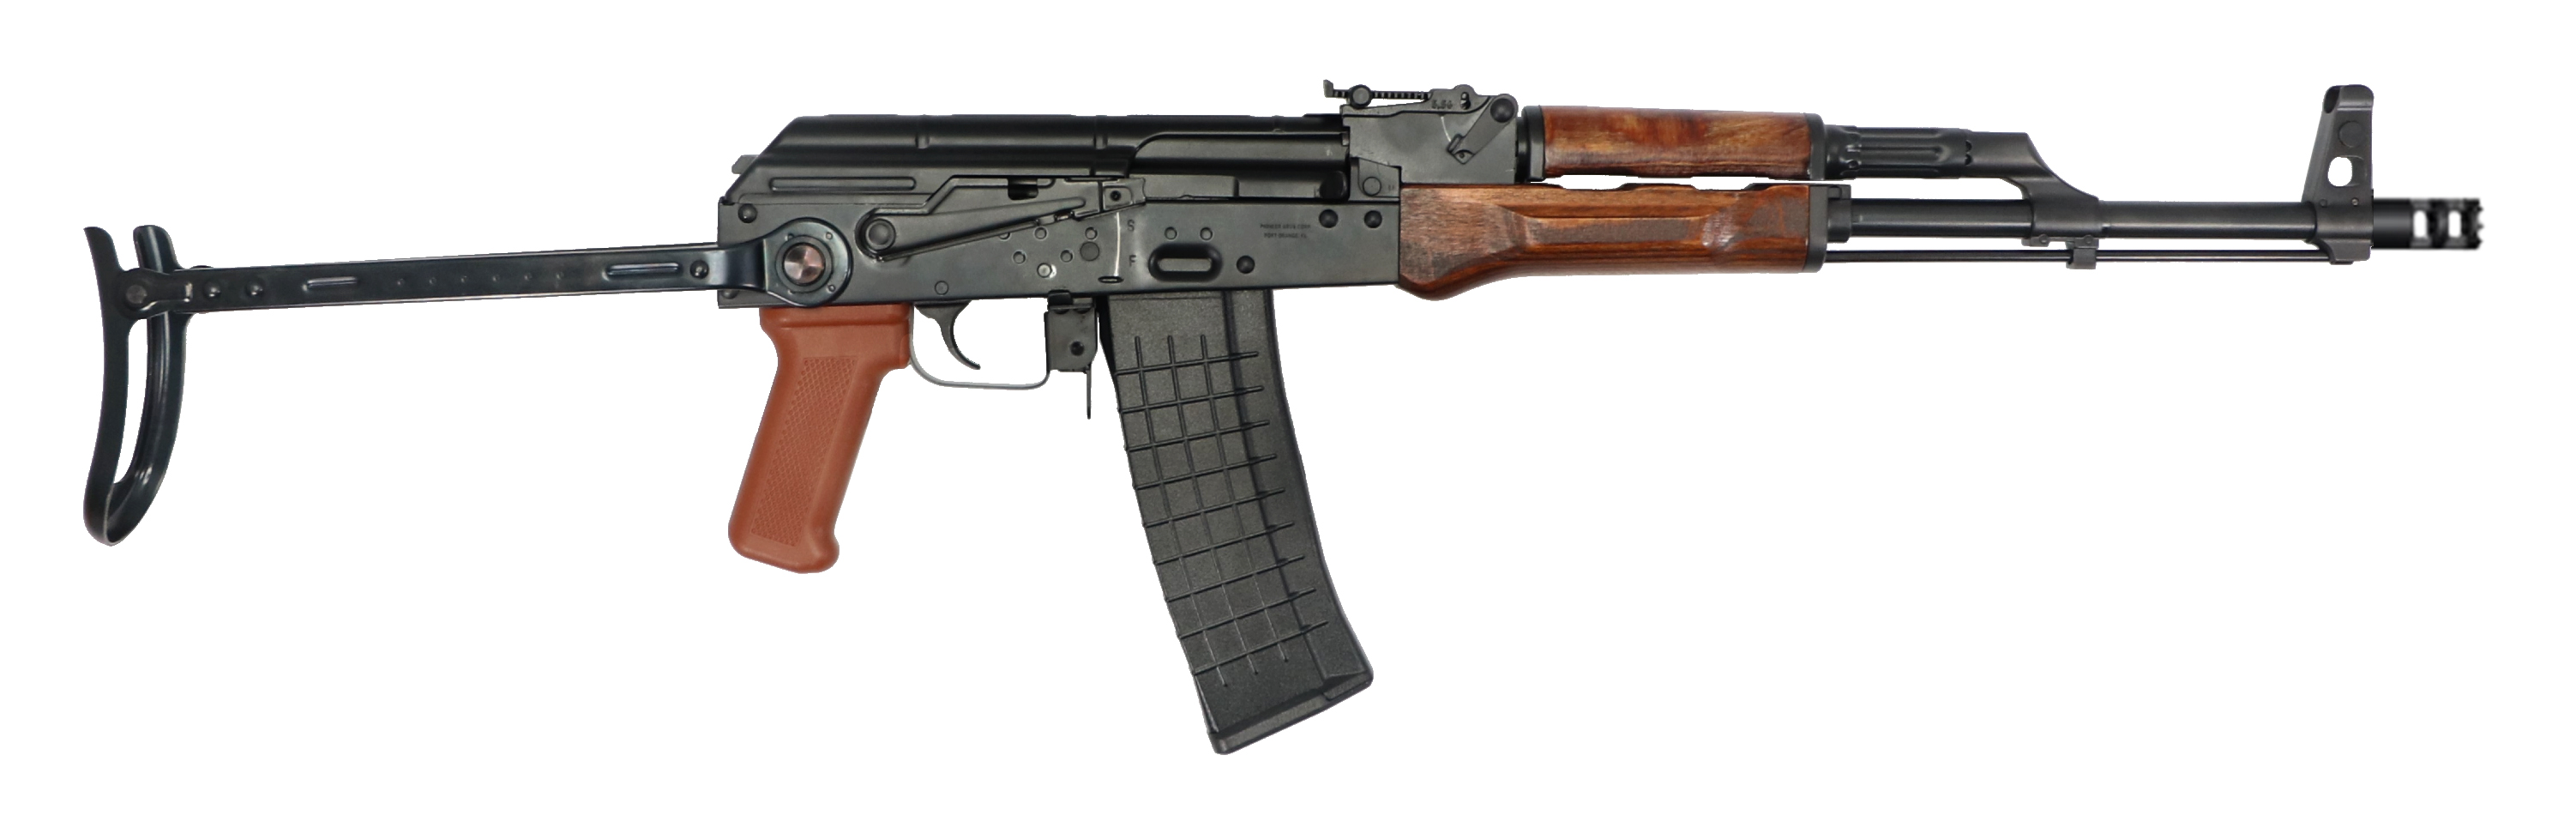 PIONEER AK-47 FORGED 5.56 UNDERFOLDER WOOD